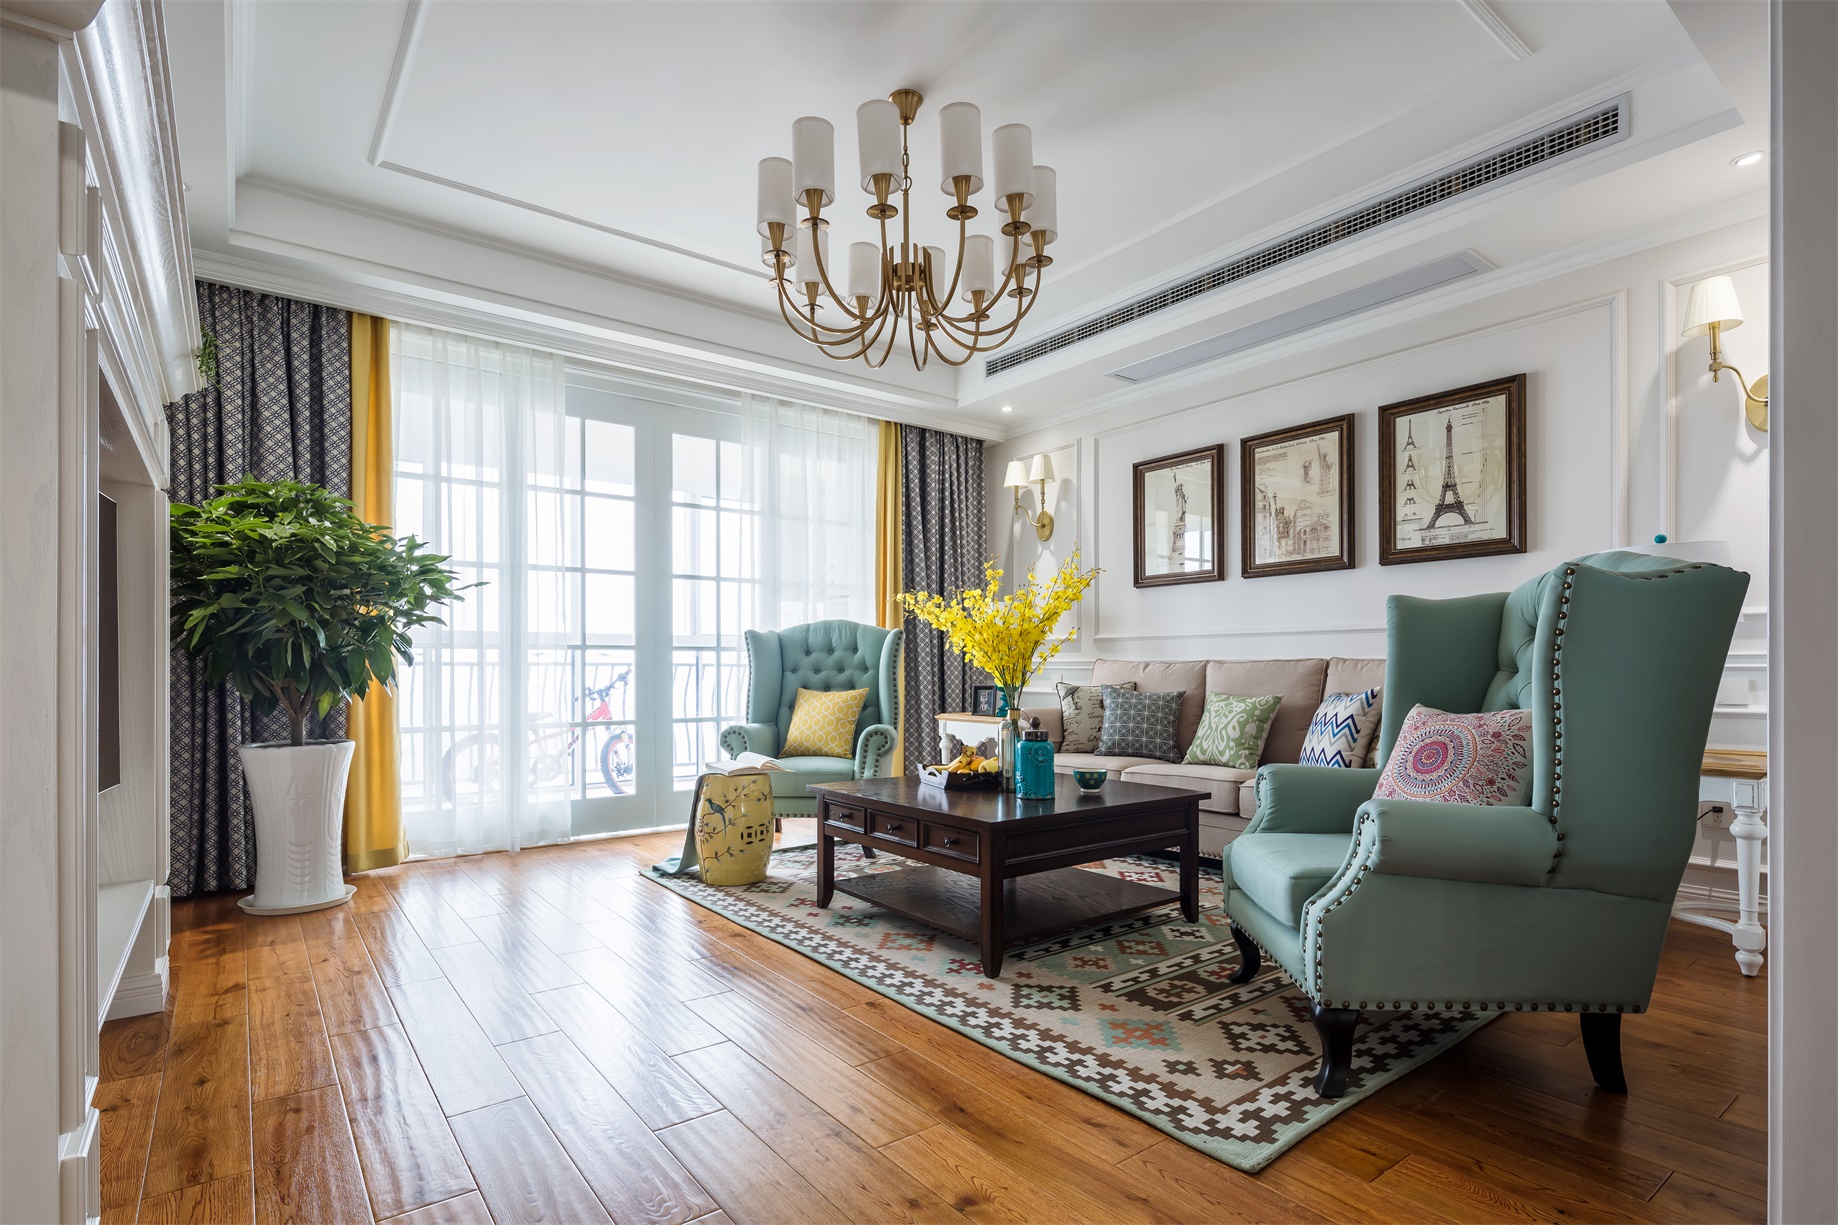 客厅采用浅色材质为主，局部使用亮色欧式元素点缀，护墙板设计新颖，灯具华美。